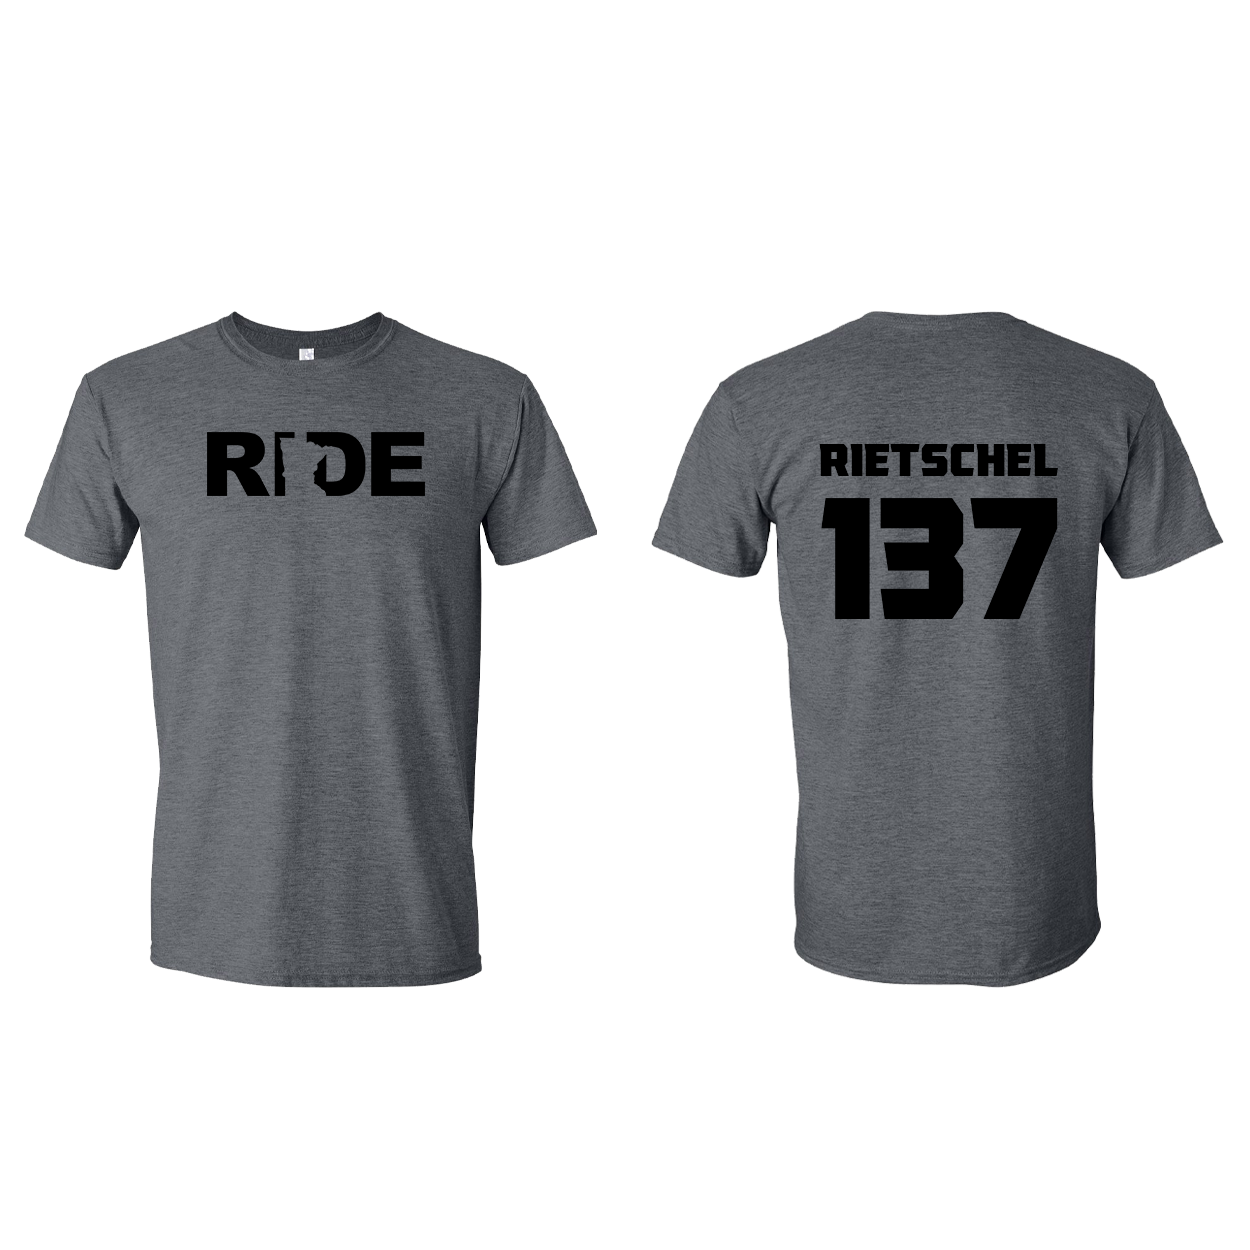 FXR BMX Race Team Classic Athlete Support T-Shirt C. RIETSCHEL #137 Dark Heather (Black Logo)